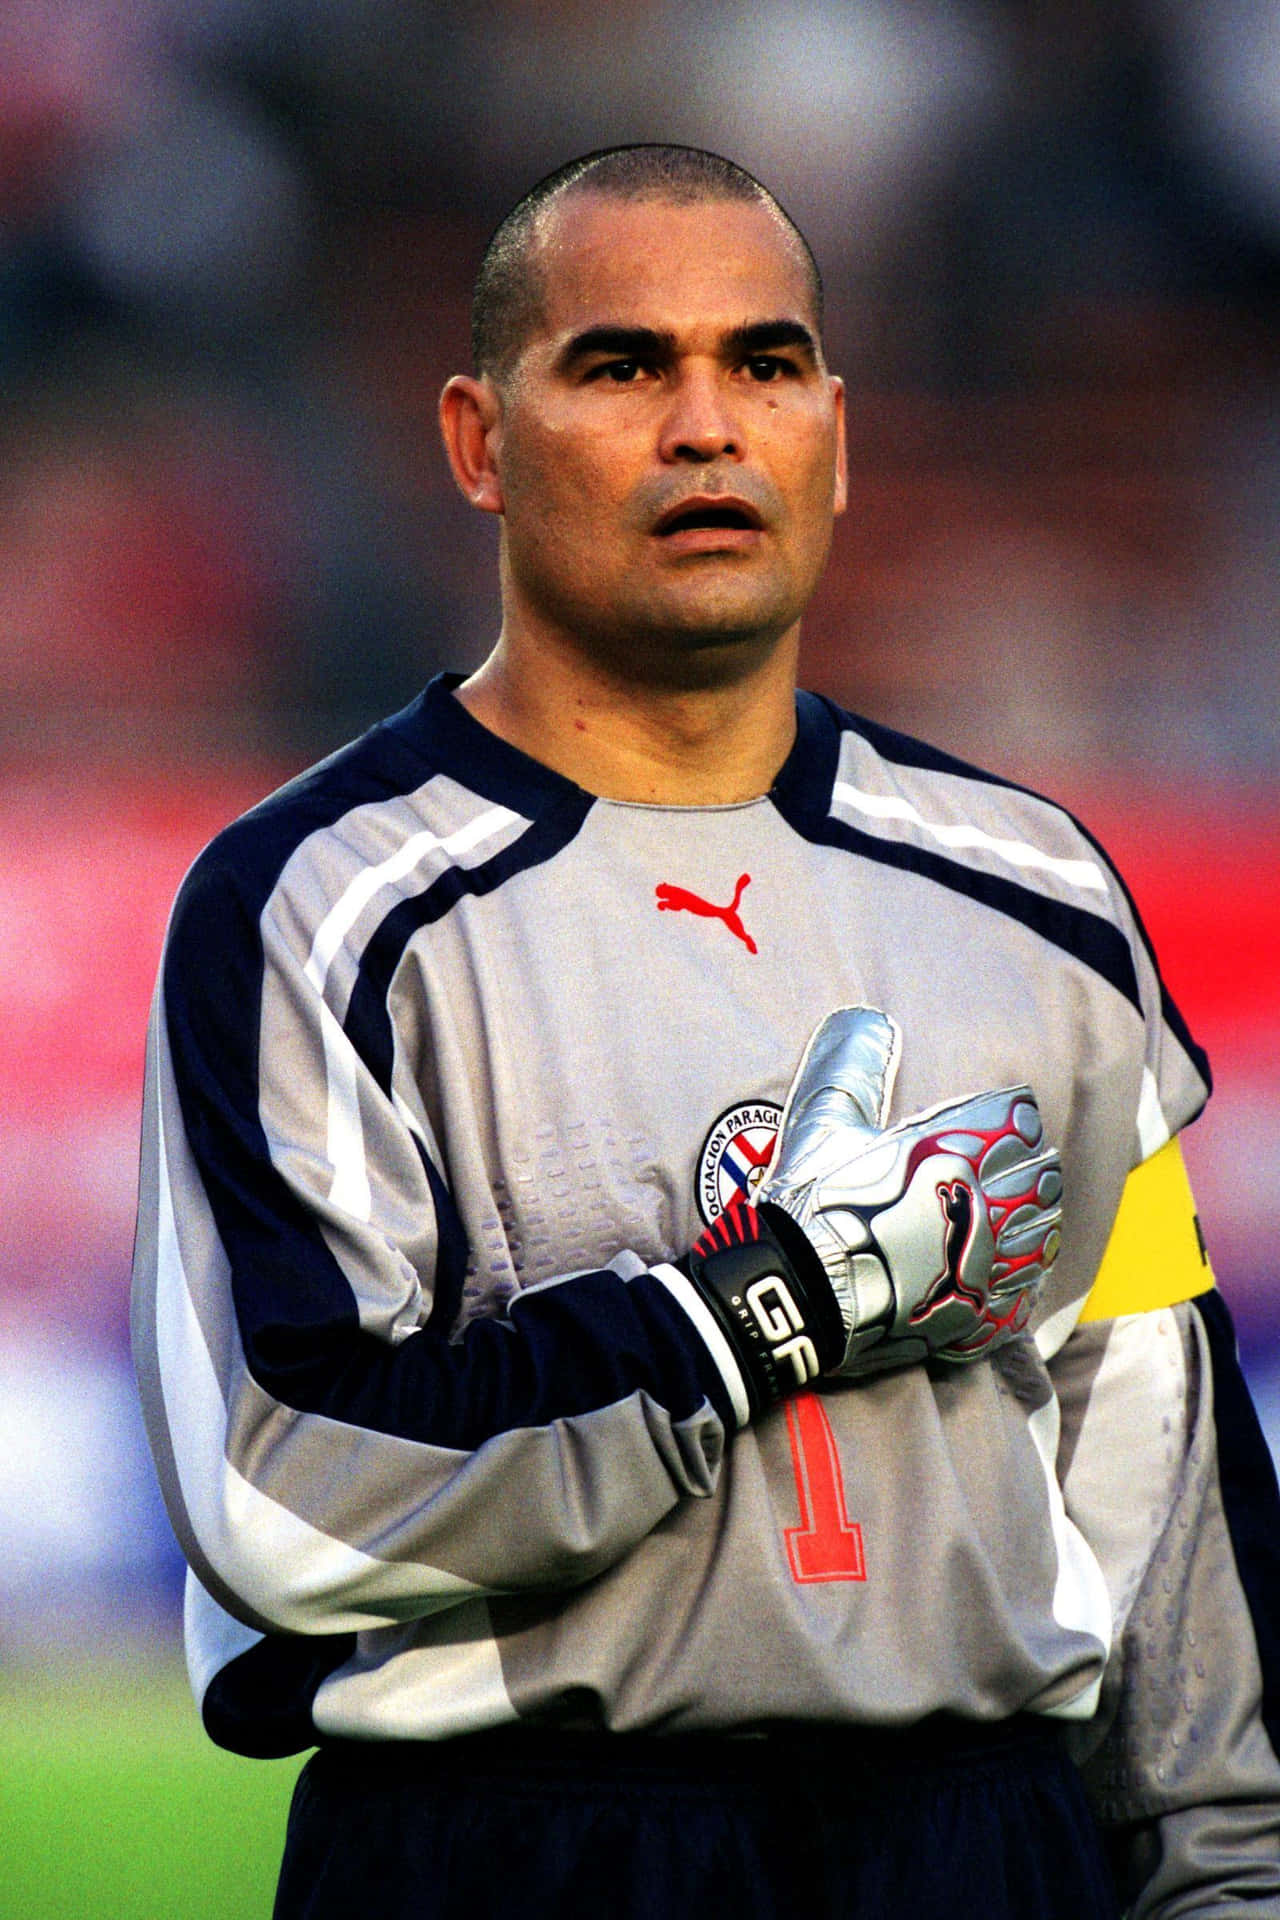 Futebolistajose Luis Chilavert Kirin Cup 2001 Foto De Ângulo Médio. Papel de Parede